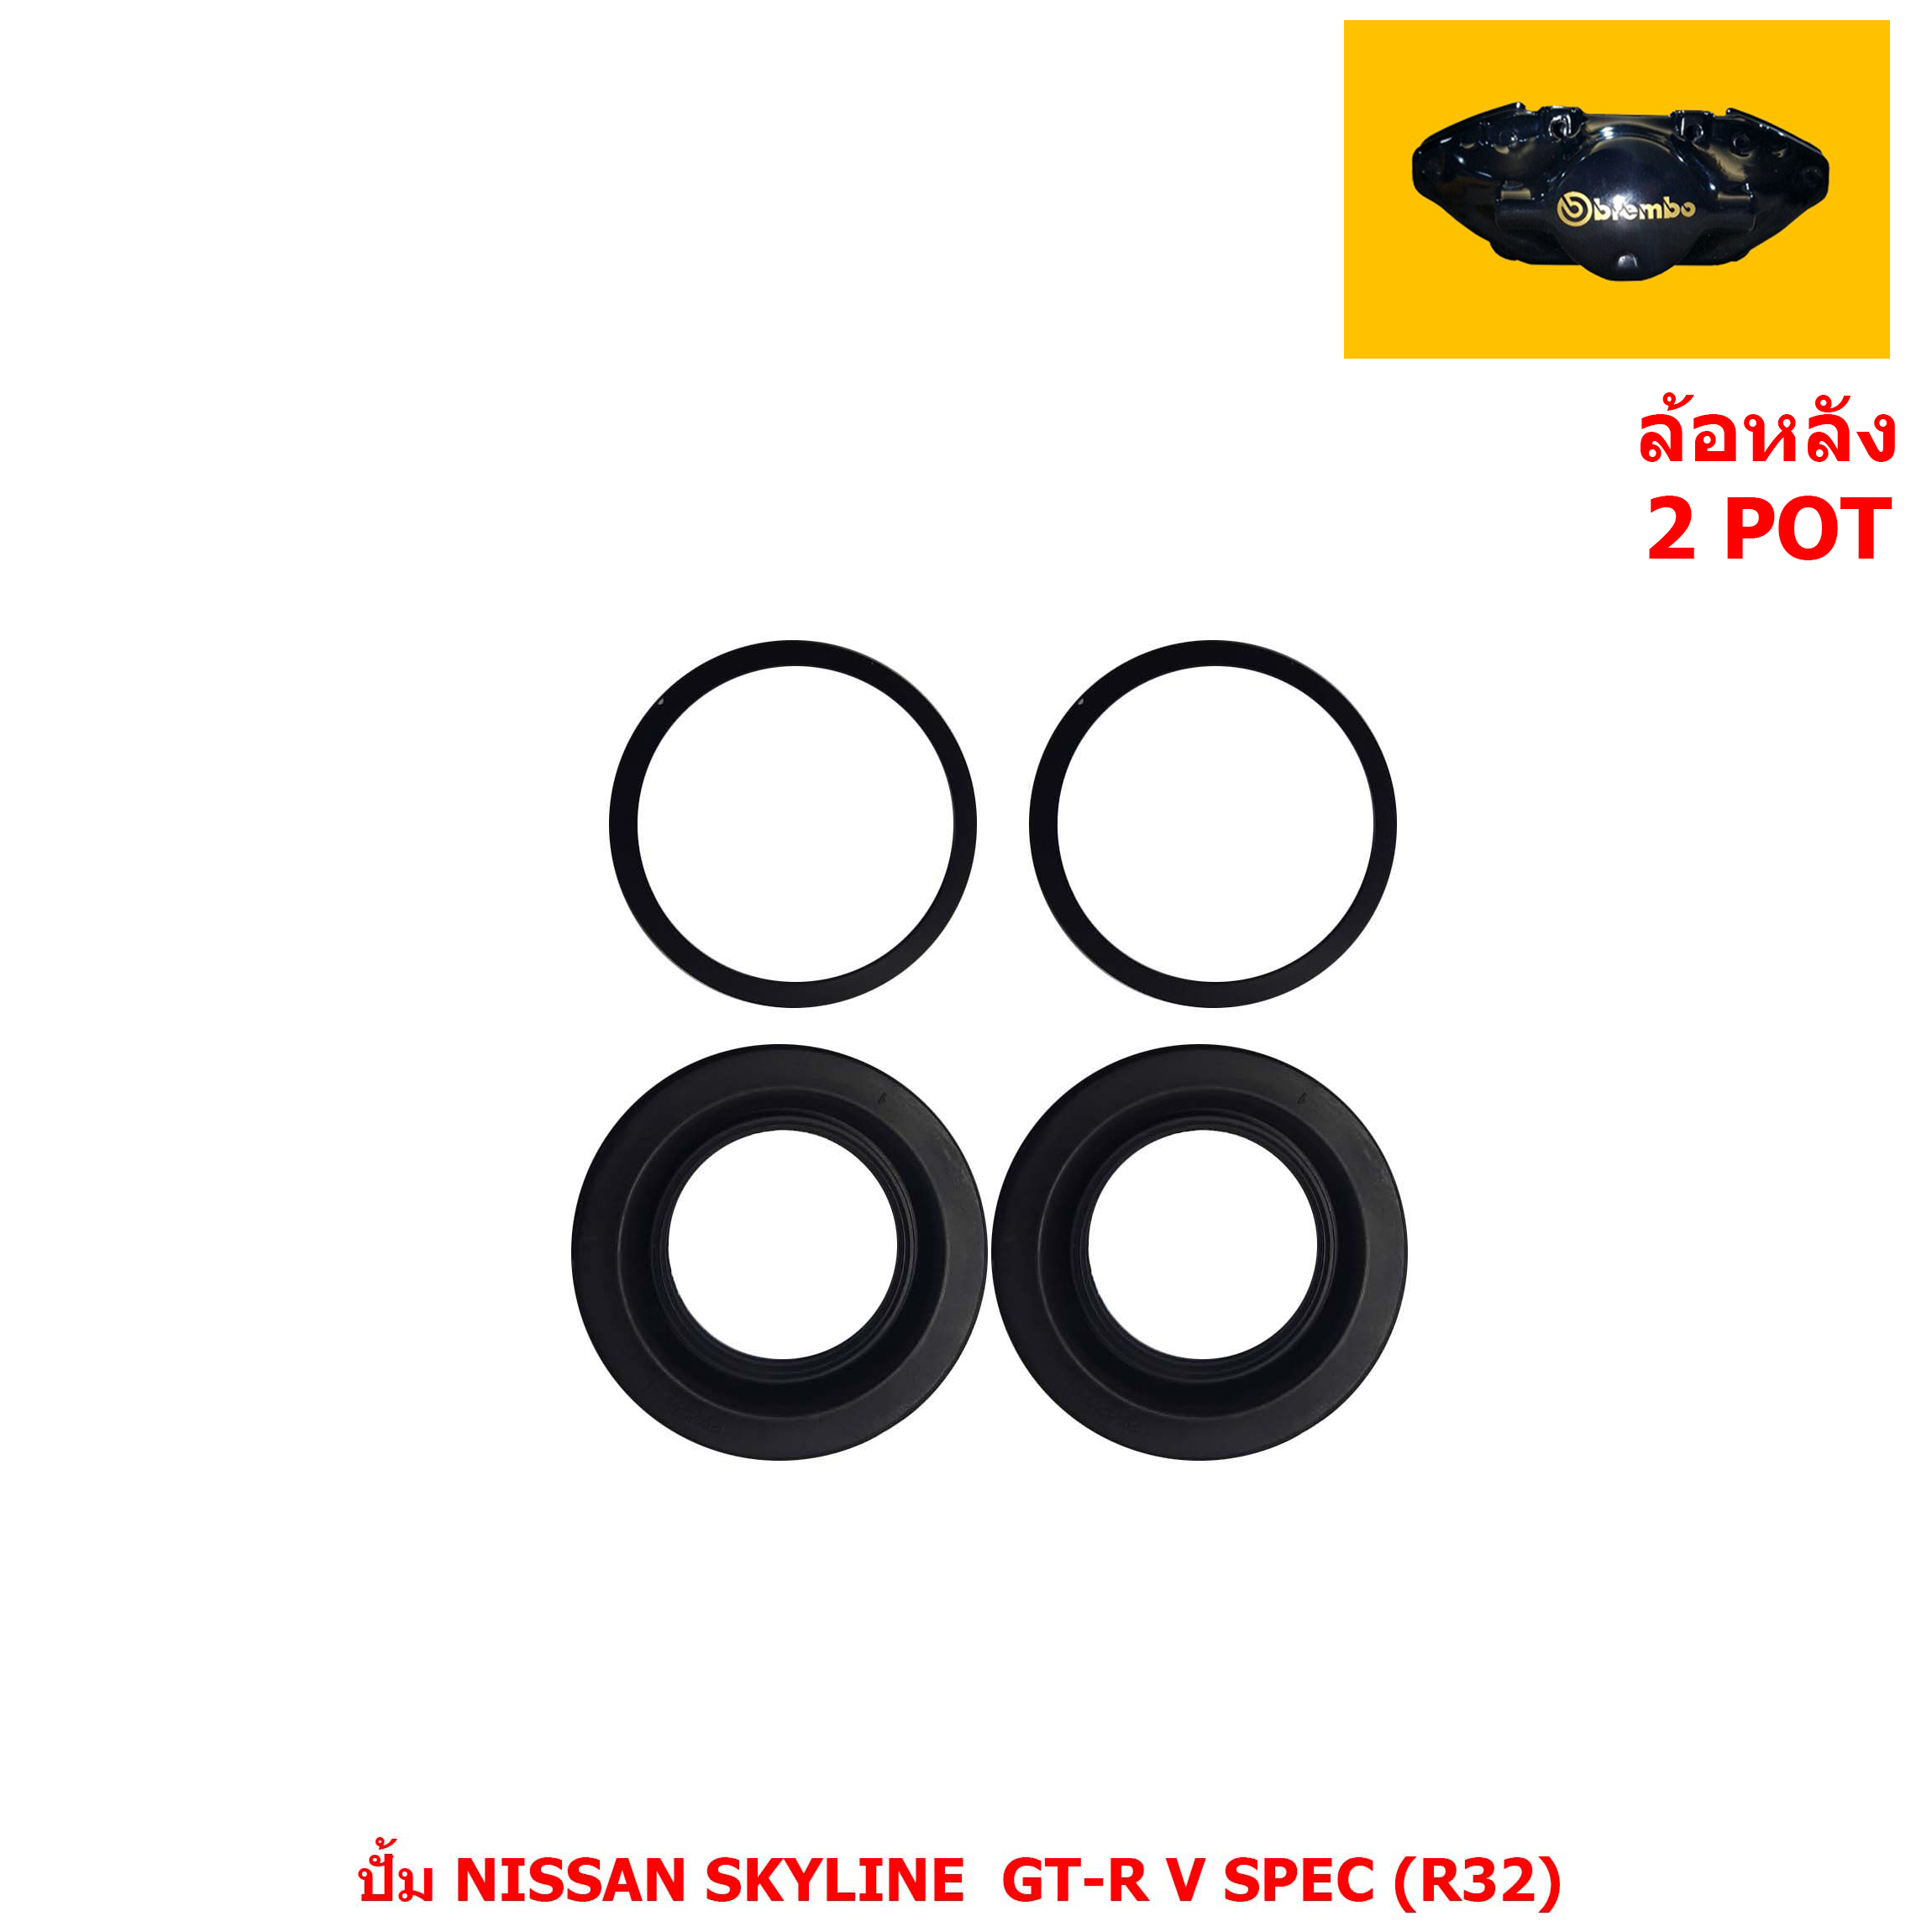 ชุดซ่อมดิสเบรค ล้อหลัง 2 POT ปั้ม NISSAN SKYLINE  GT-R V SPEC (R32) [นิสสัน สกายไลน์ จีที-อาร์ วี สเปค (R32)]